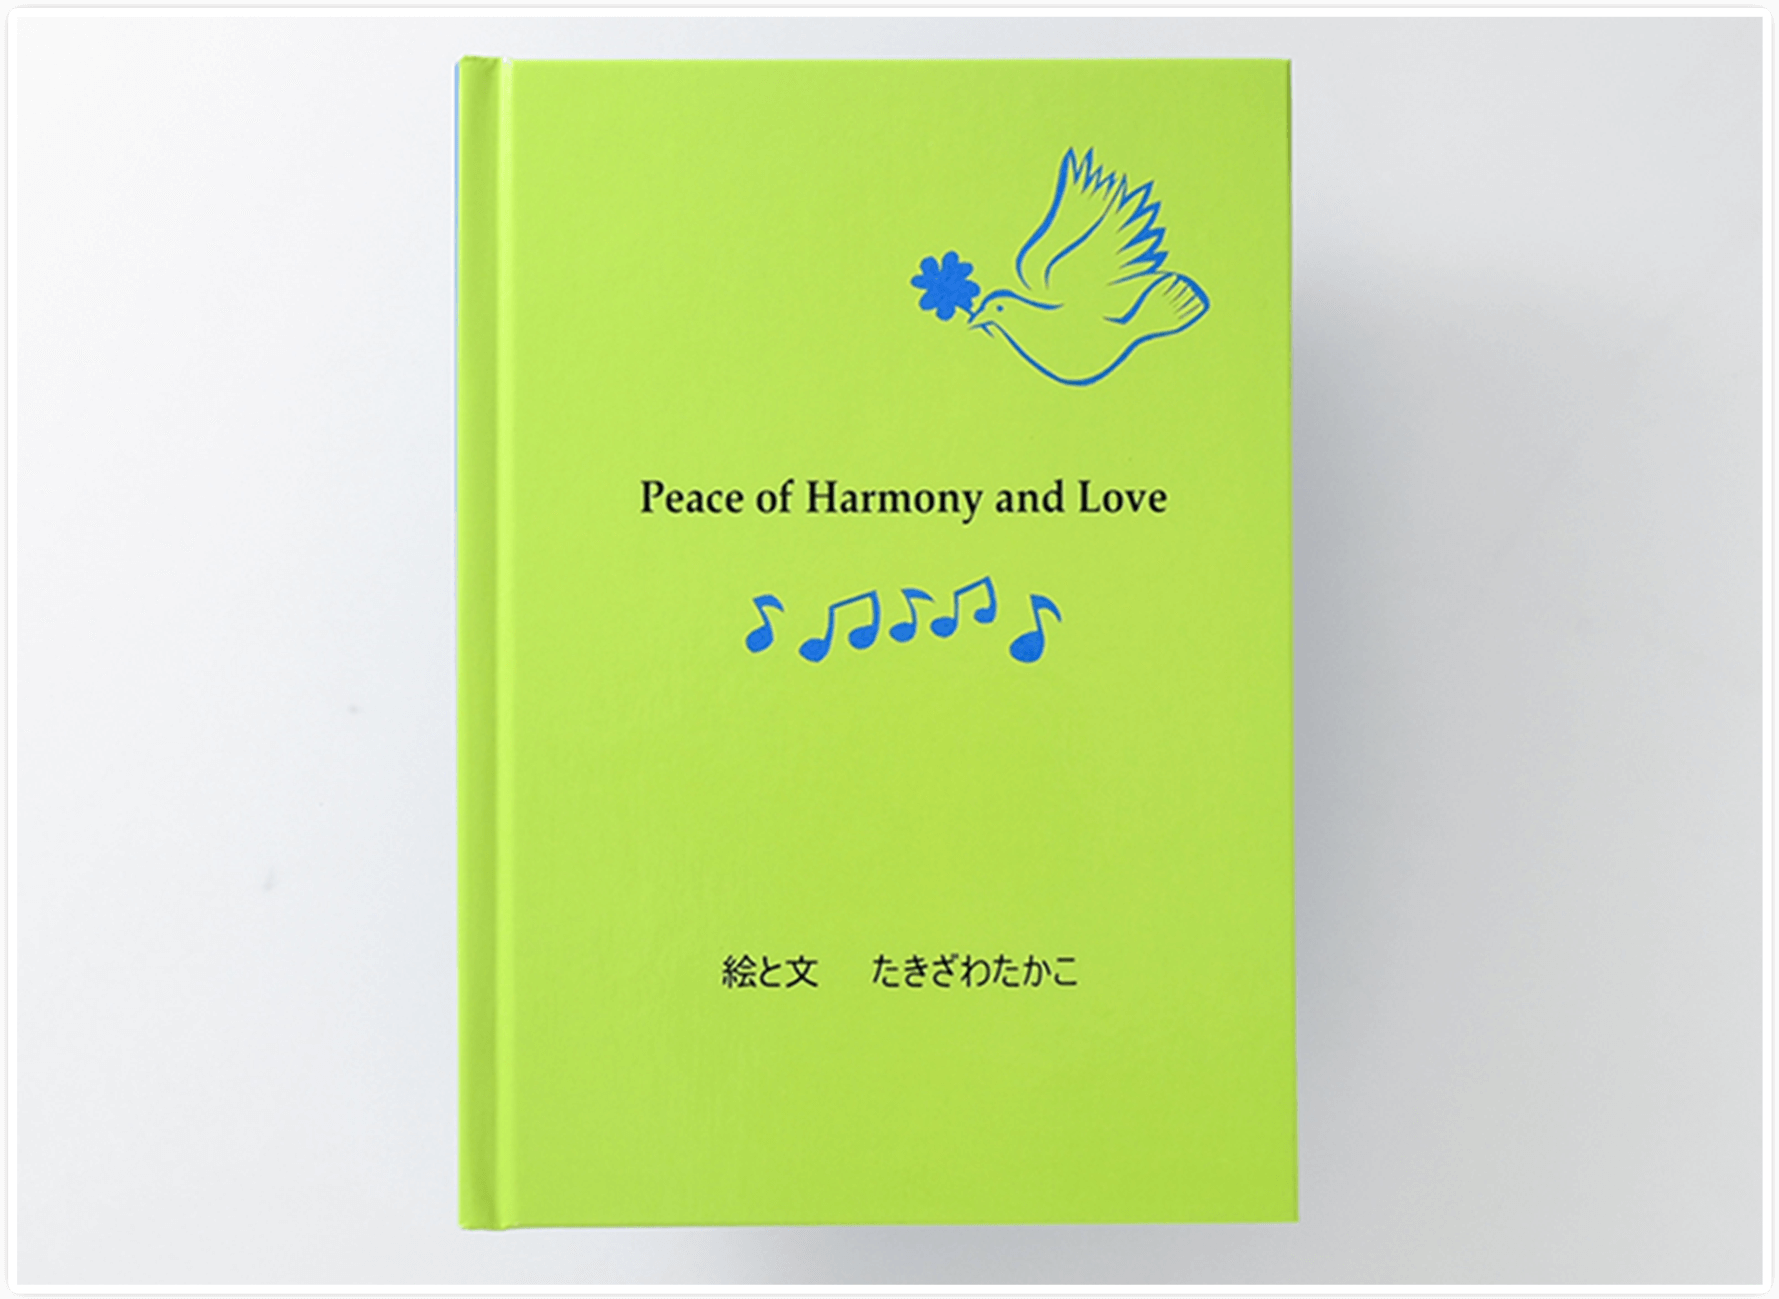 絵本「Peace of Harmony and Love」